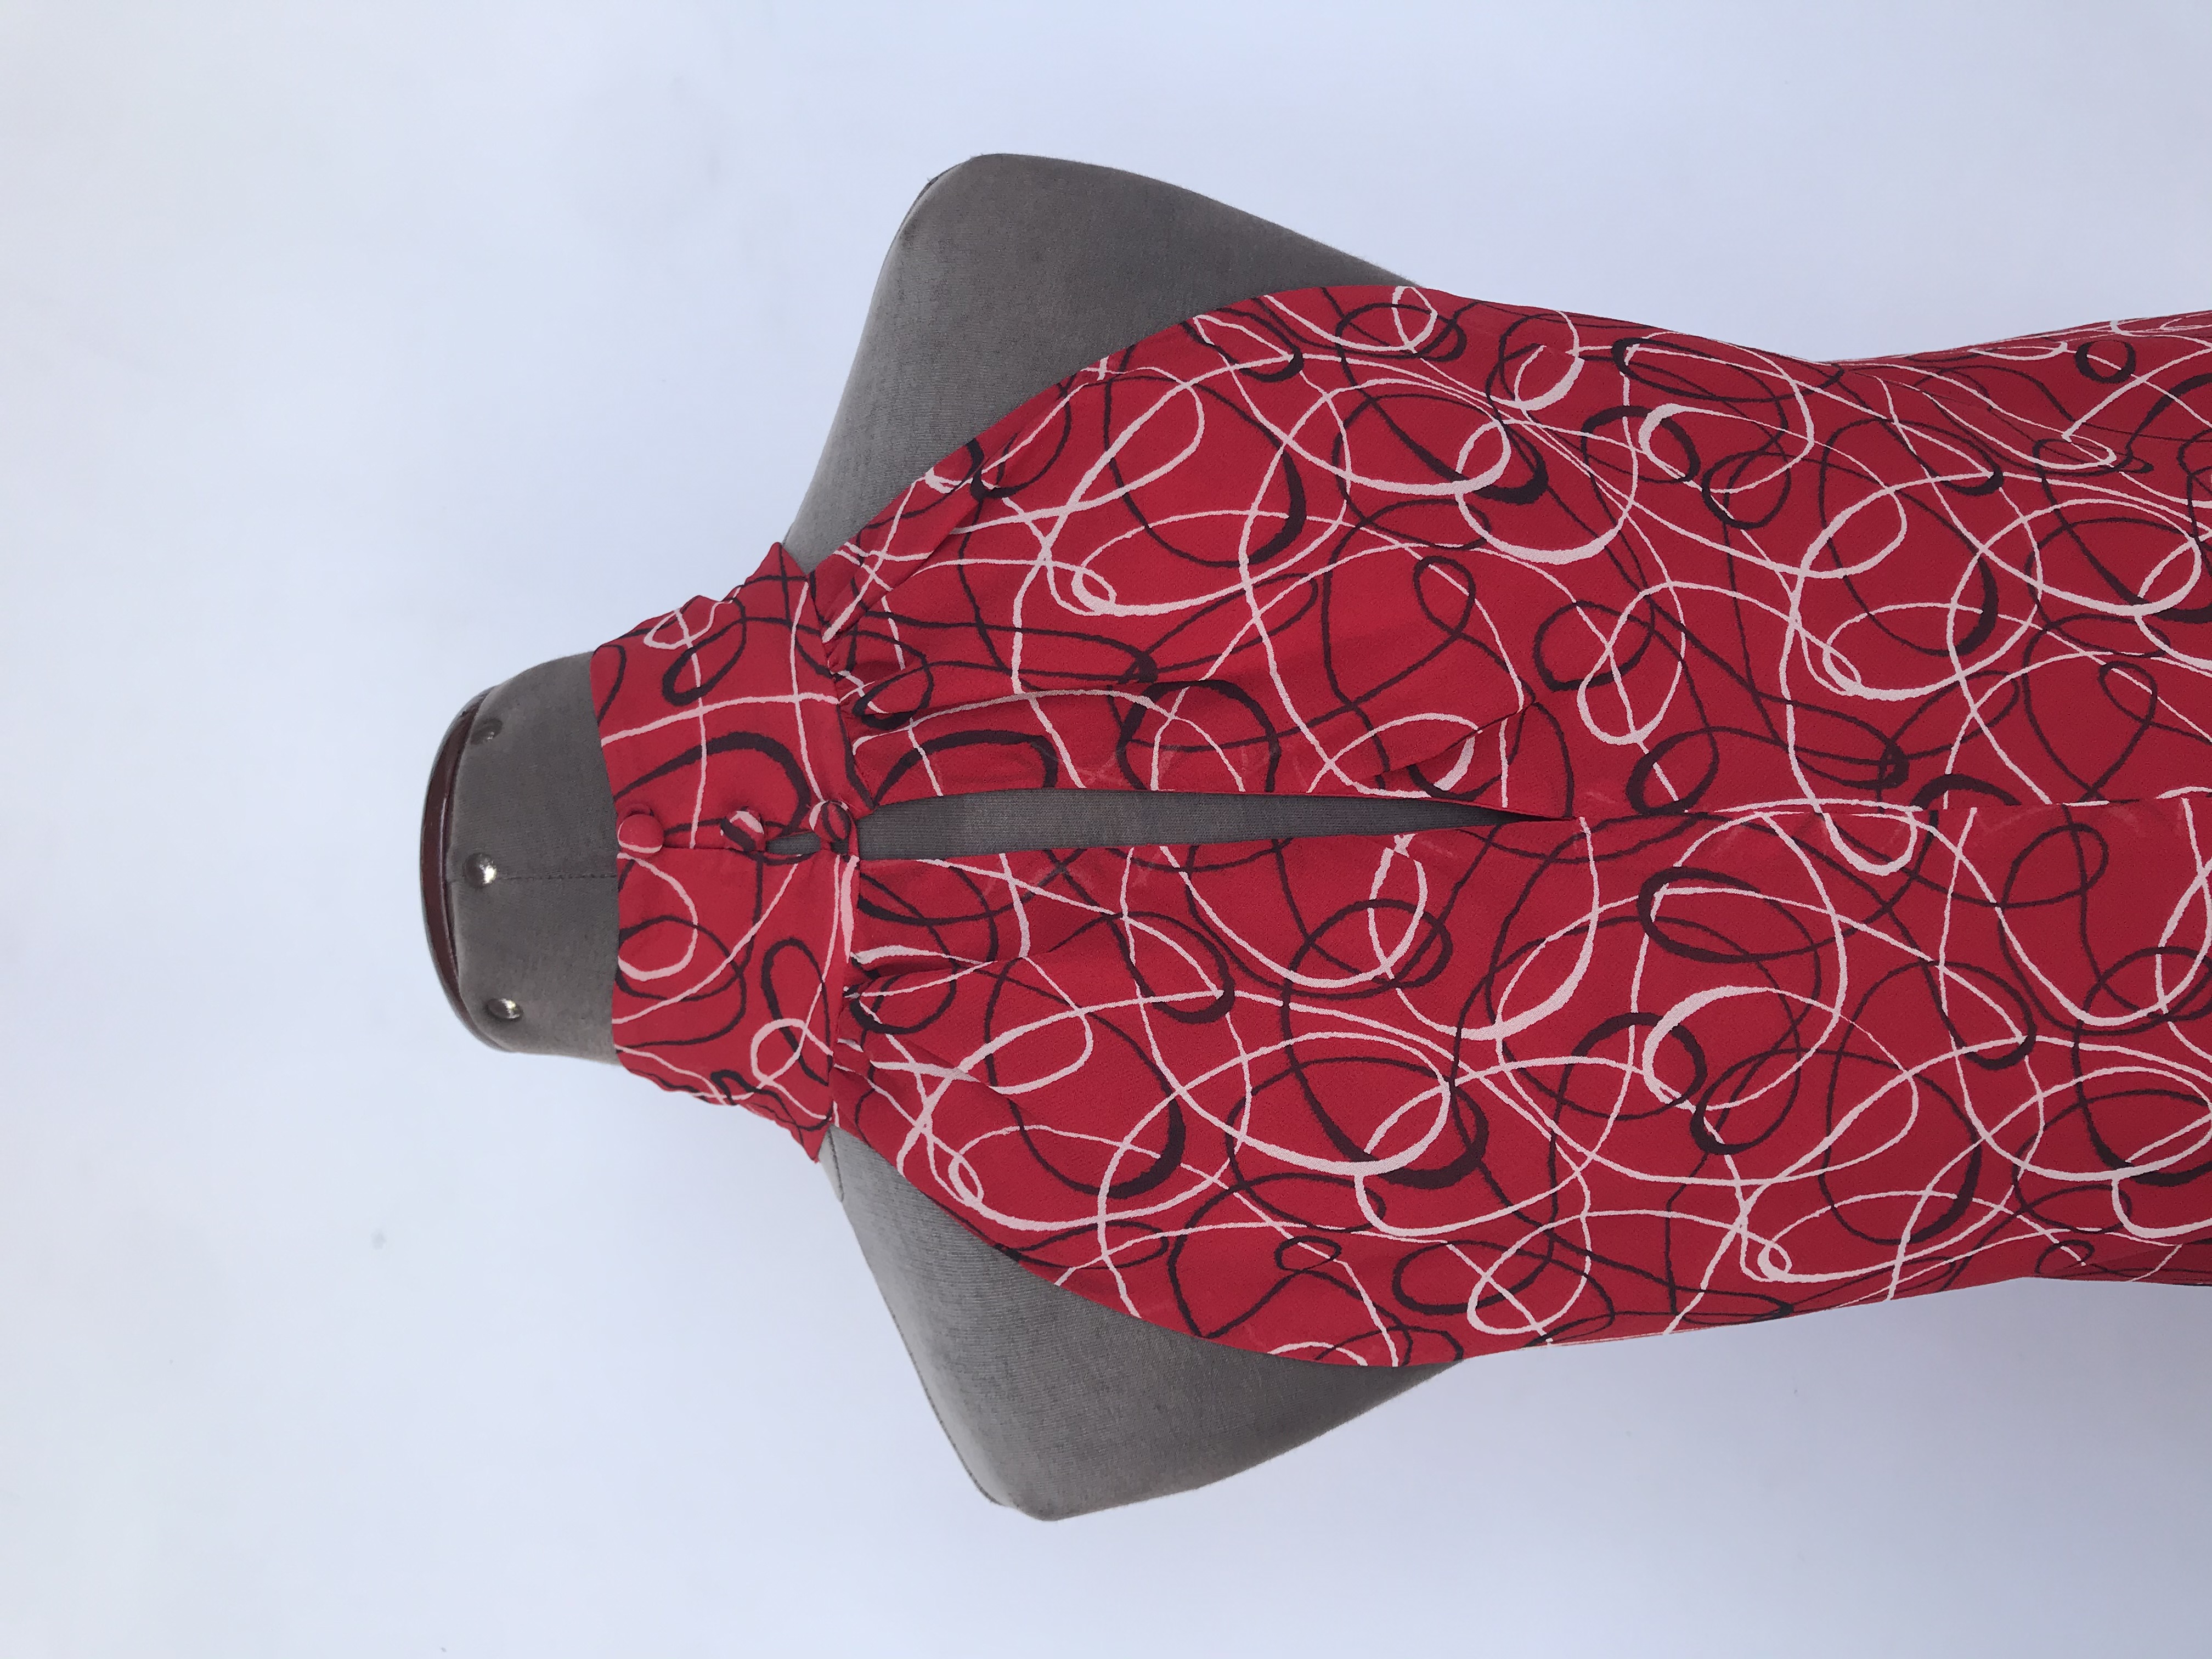 Blusa I.N.C de gasa roja con estampado de espirales crema y negro, cuello alto con botones posteriores, es forrada
Precio Original S/. 180
Talla S (8, Puede ser M)